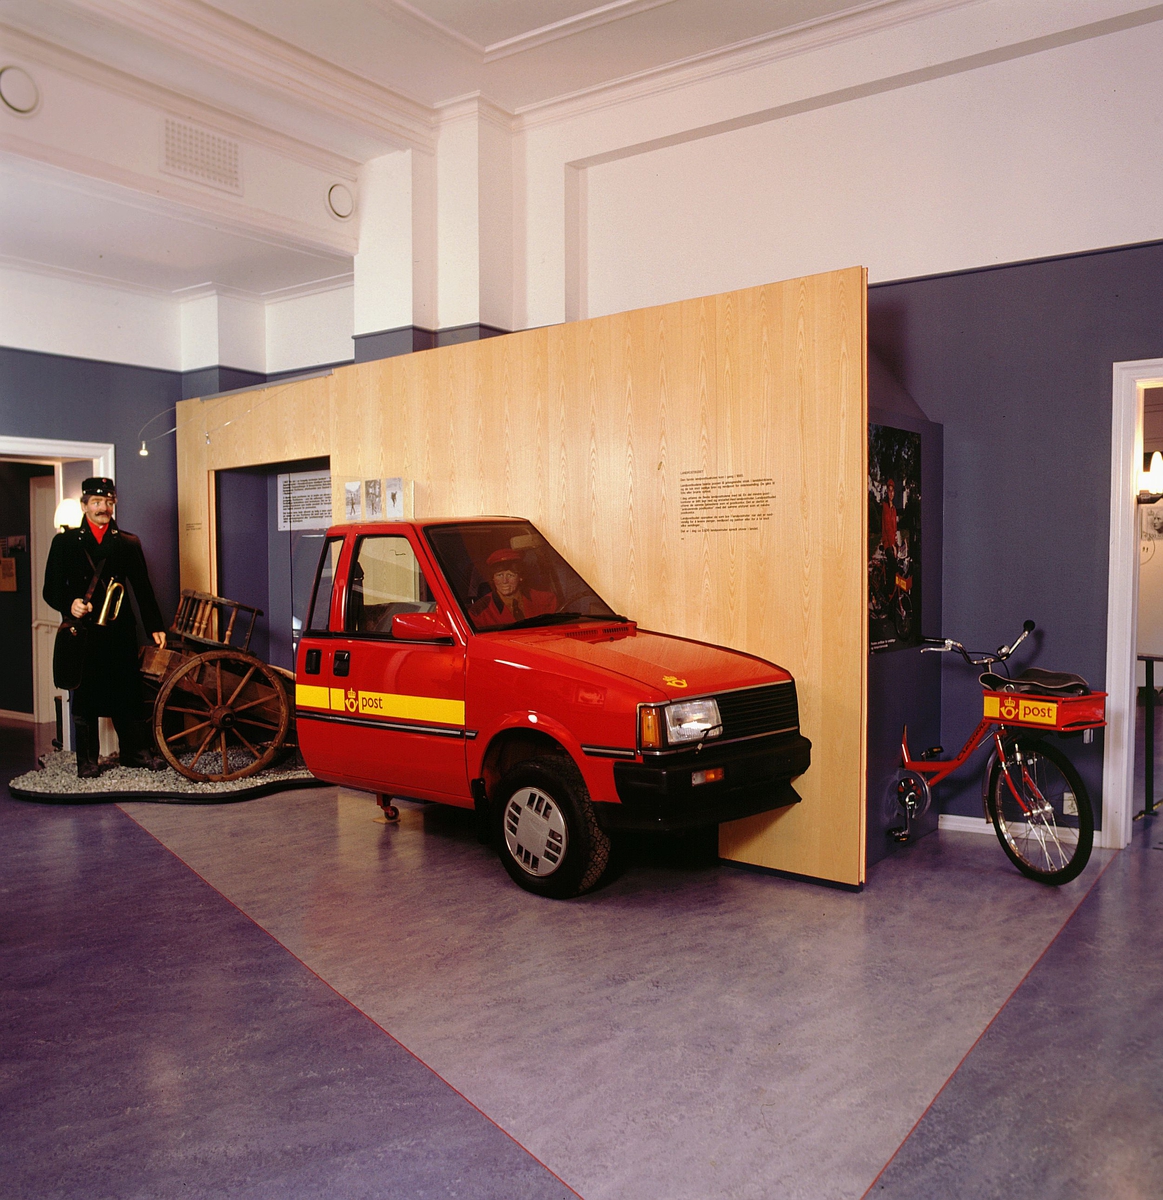 postmuseet, Kirkegata 20, utstilling, postbil, kjerre, postsykkel